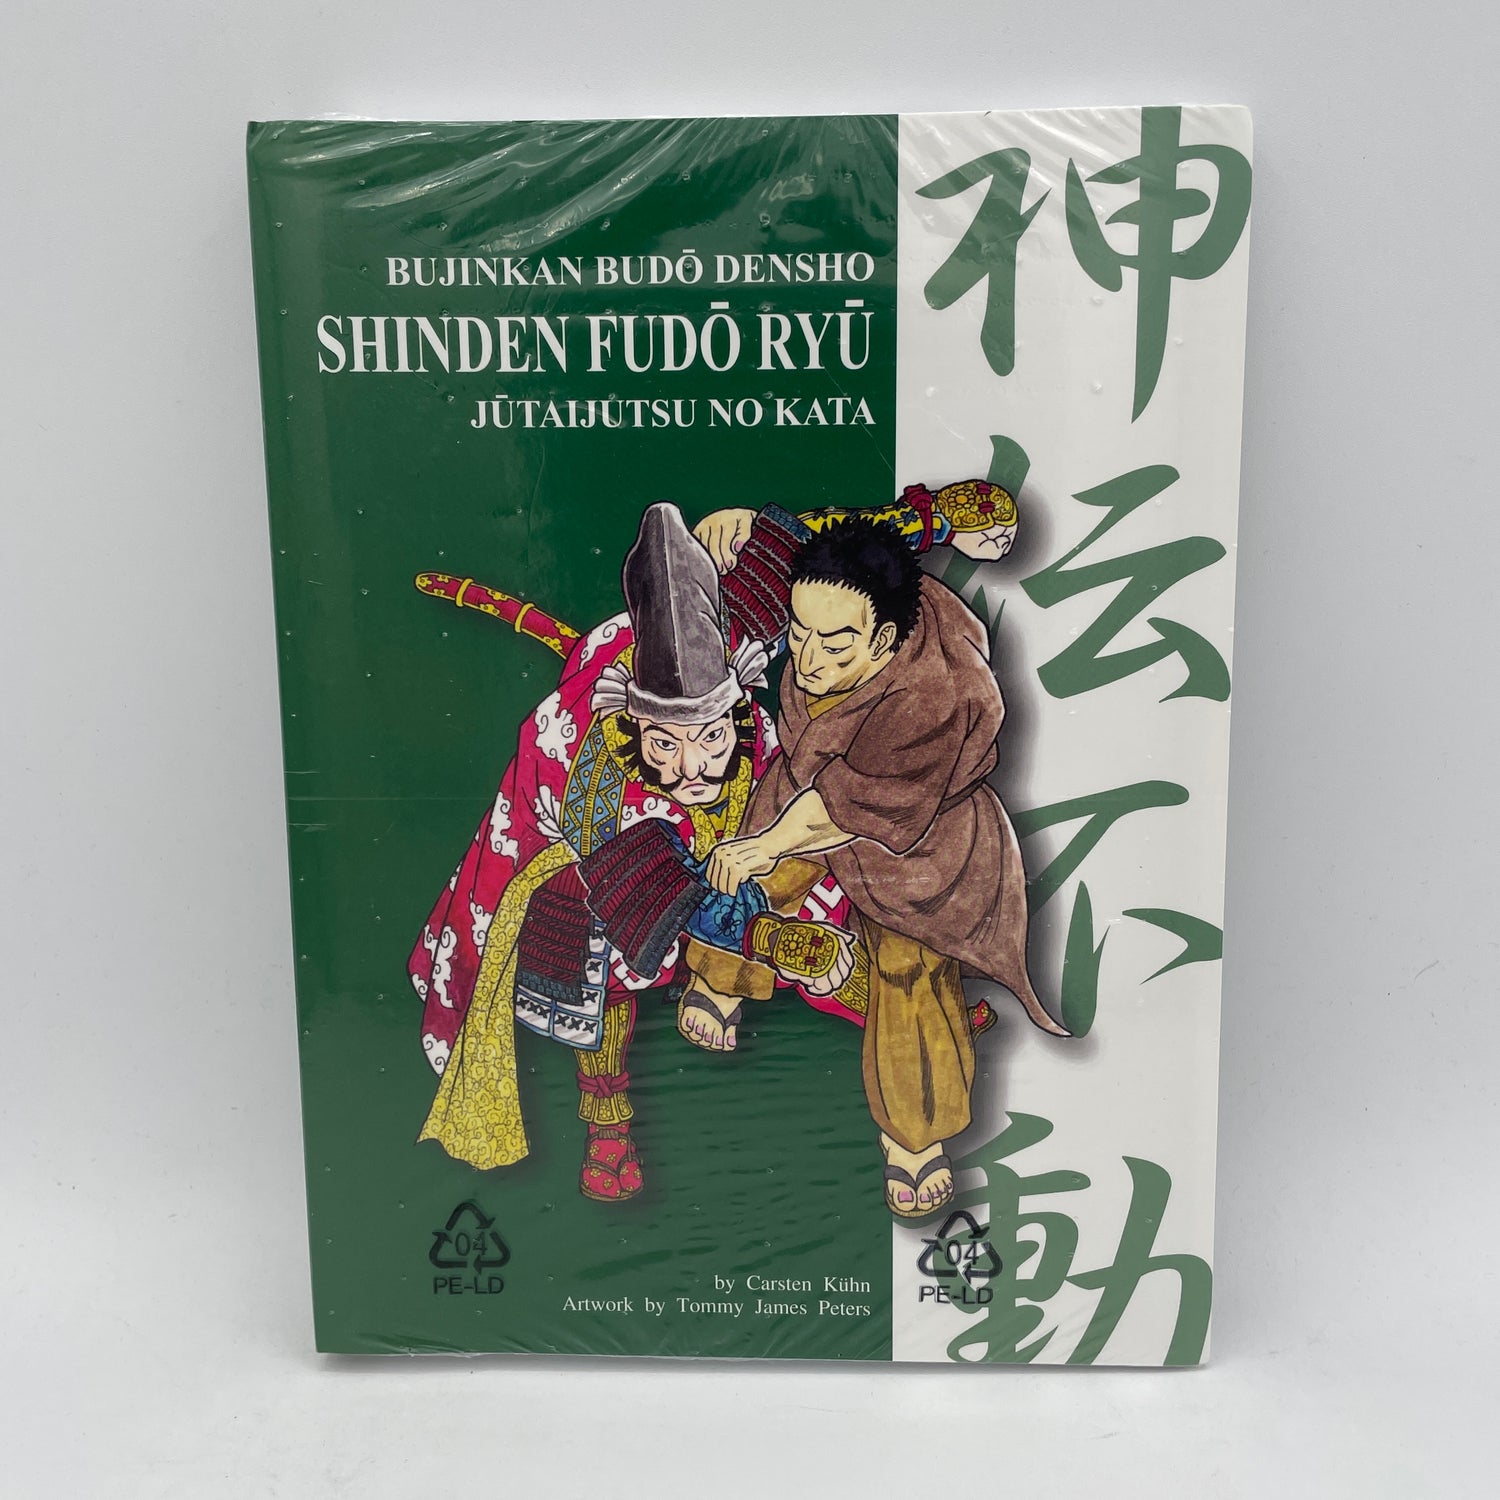 Bujinkan Budo Densho Book 6 Shinden Fudo Ryu Jutaijutsu by Carsten Kuhn